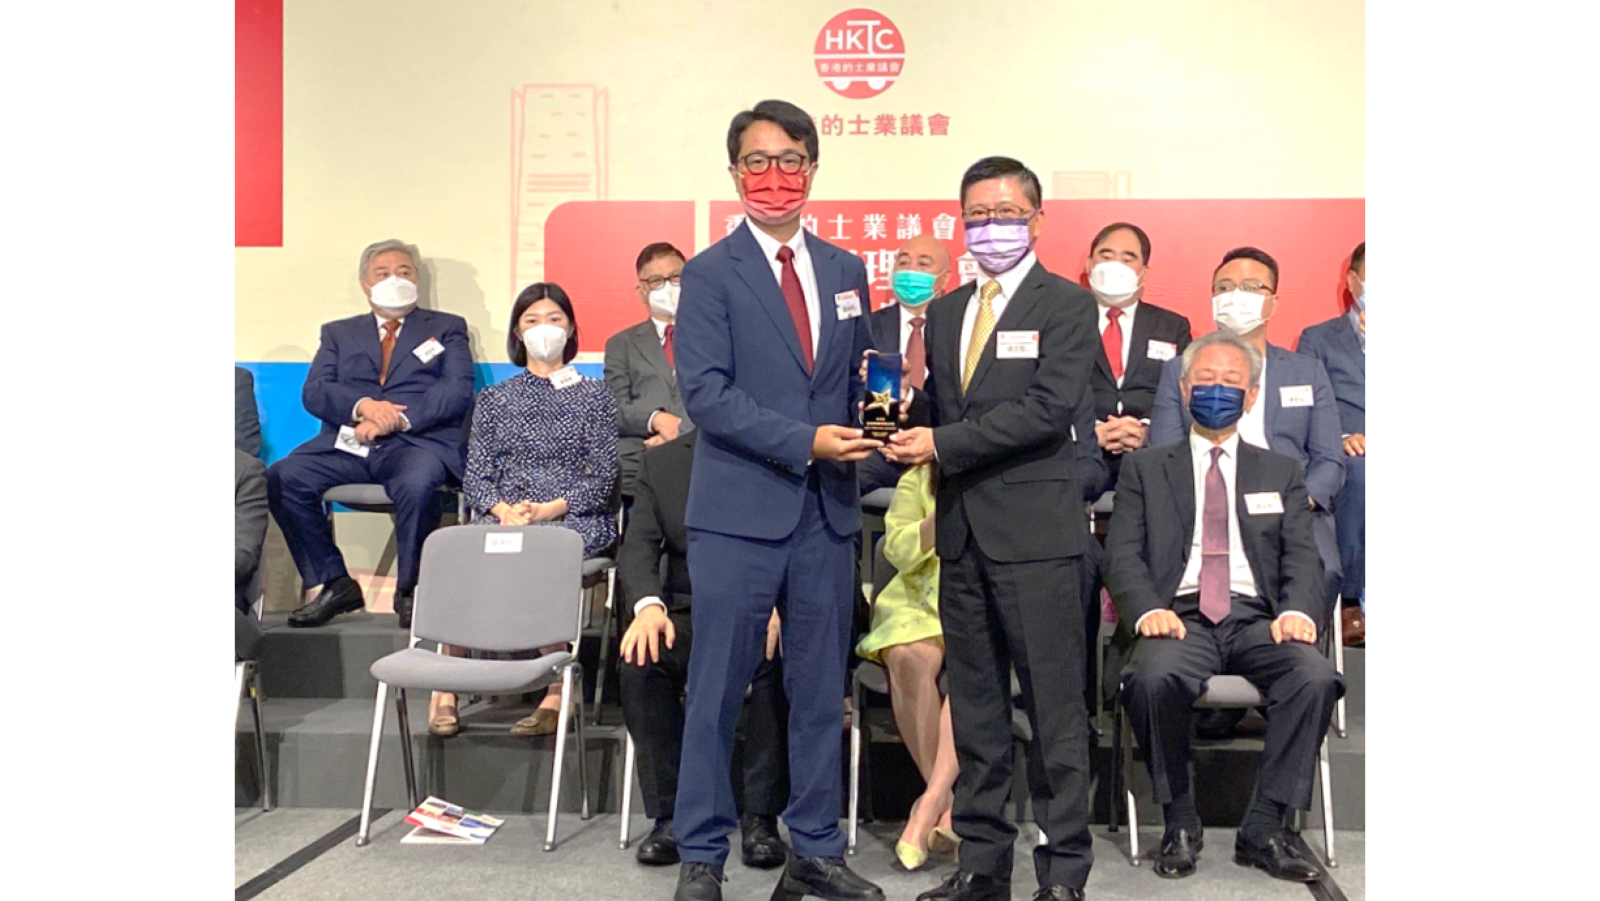 富通保险荣获香港的士业议会颁发感谢奖座